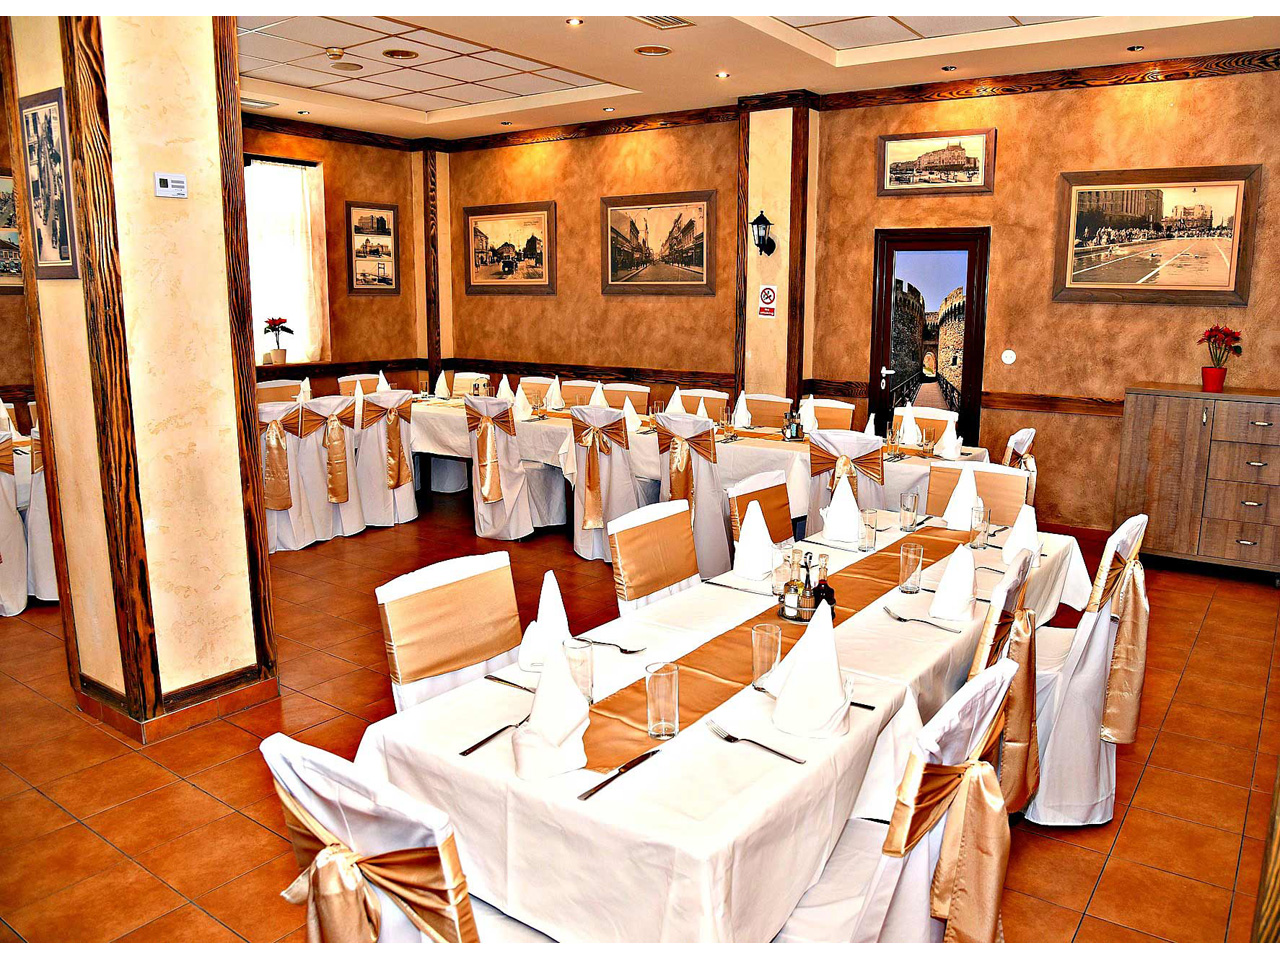 DREN RESTAURANT Restaurants for weddings, celebrations Belgrade - Photo 7